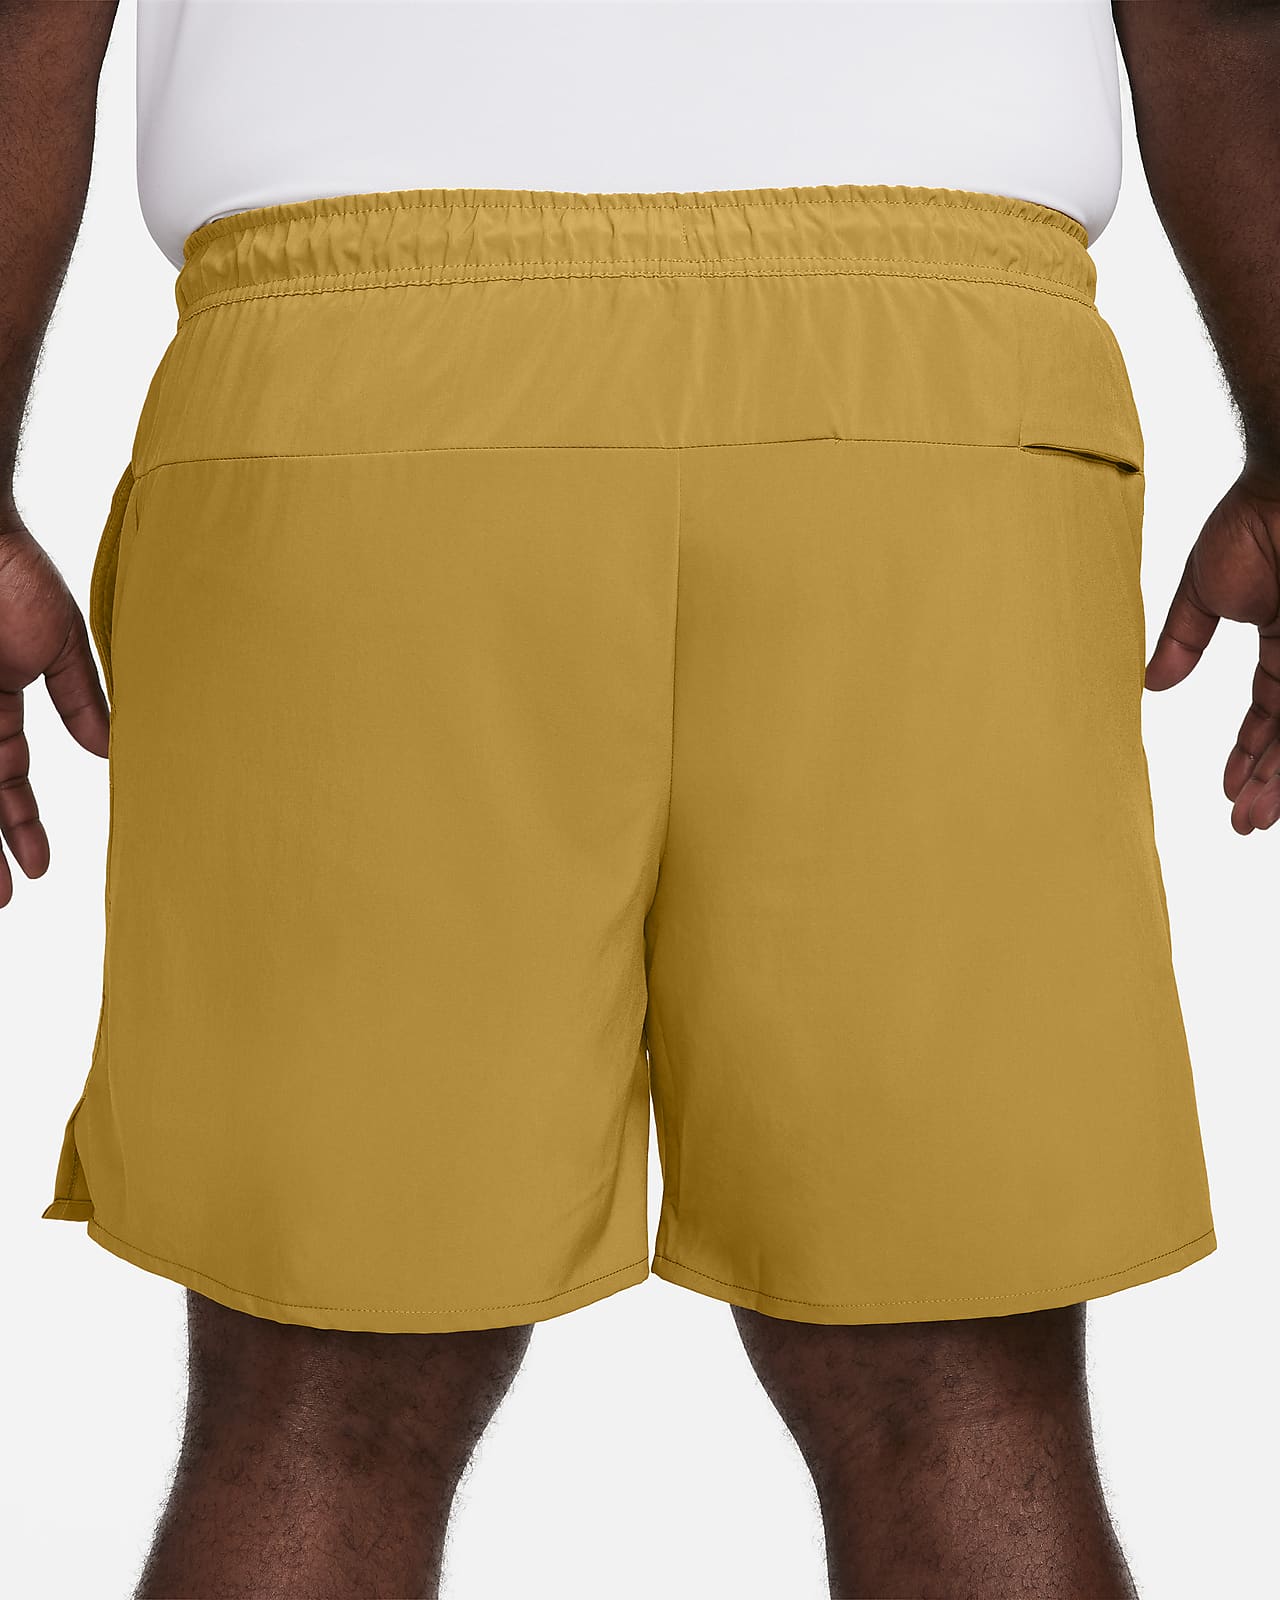 Nike Dri-FIT ADV APS Men's 15cm (approx.) Unlined Versatile Shorts